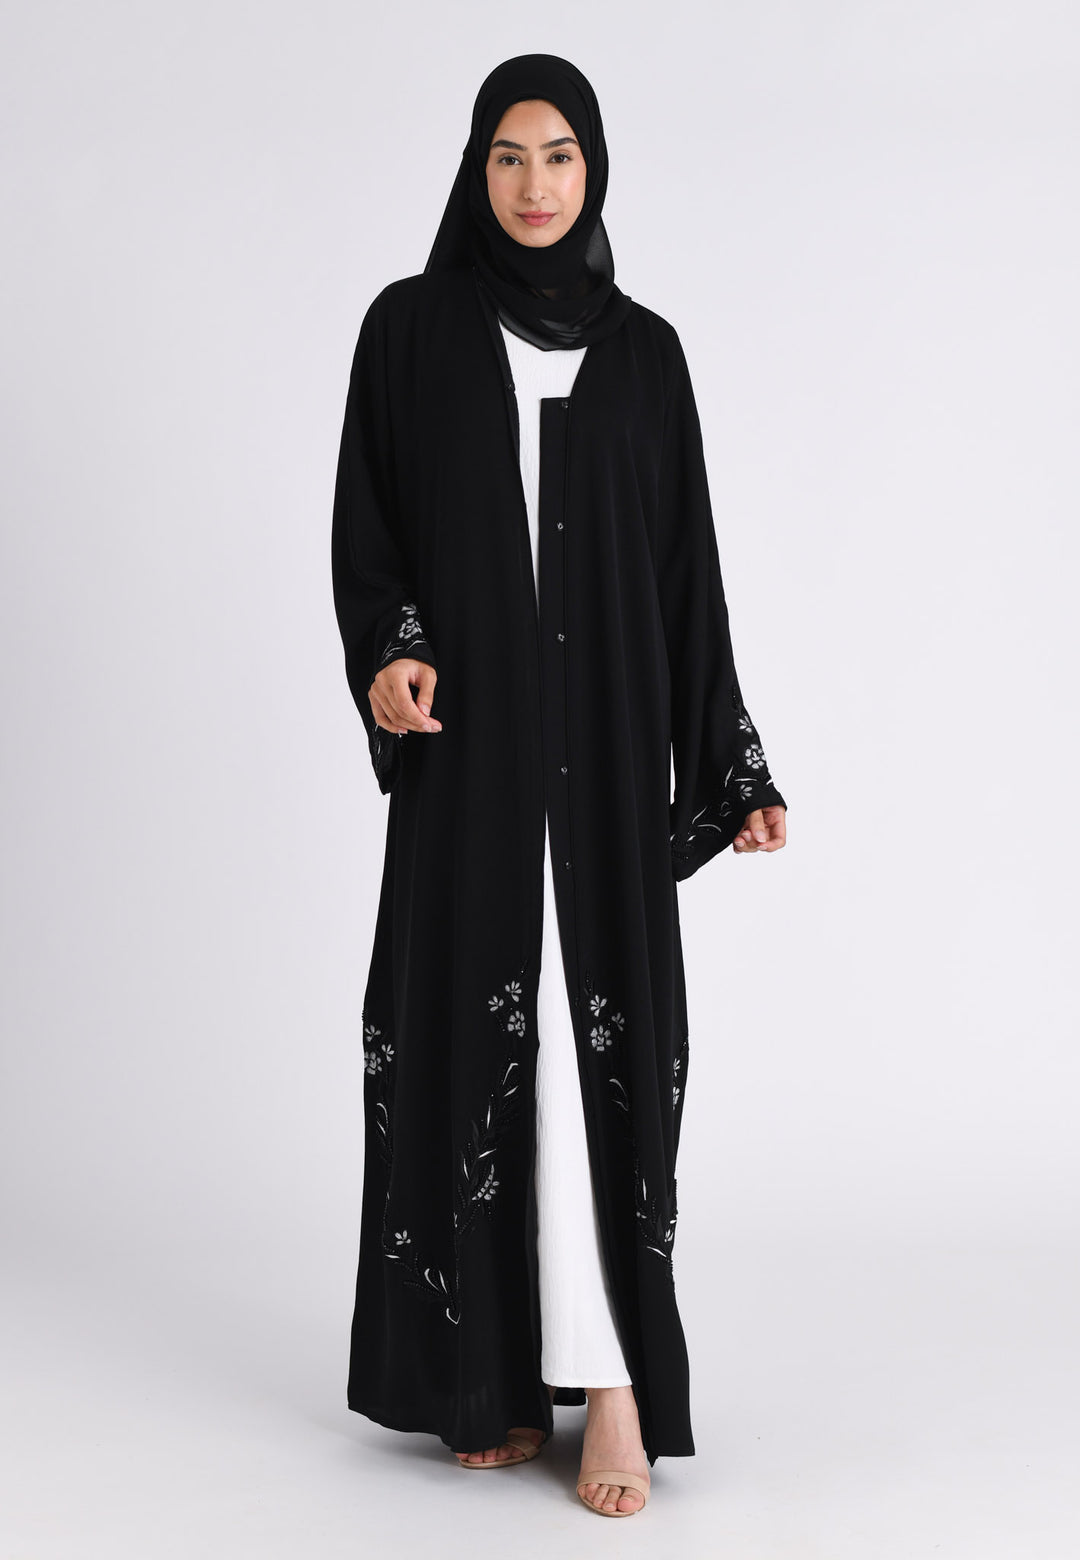 Elegant Noir Embroidered Abaya With Minimal Embellishments